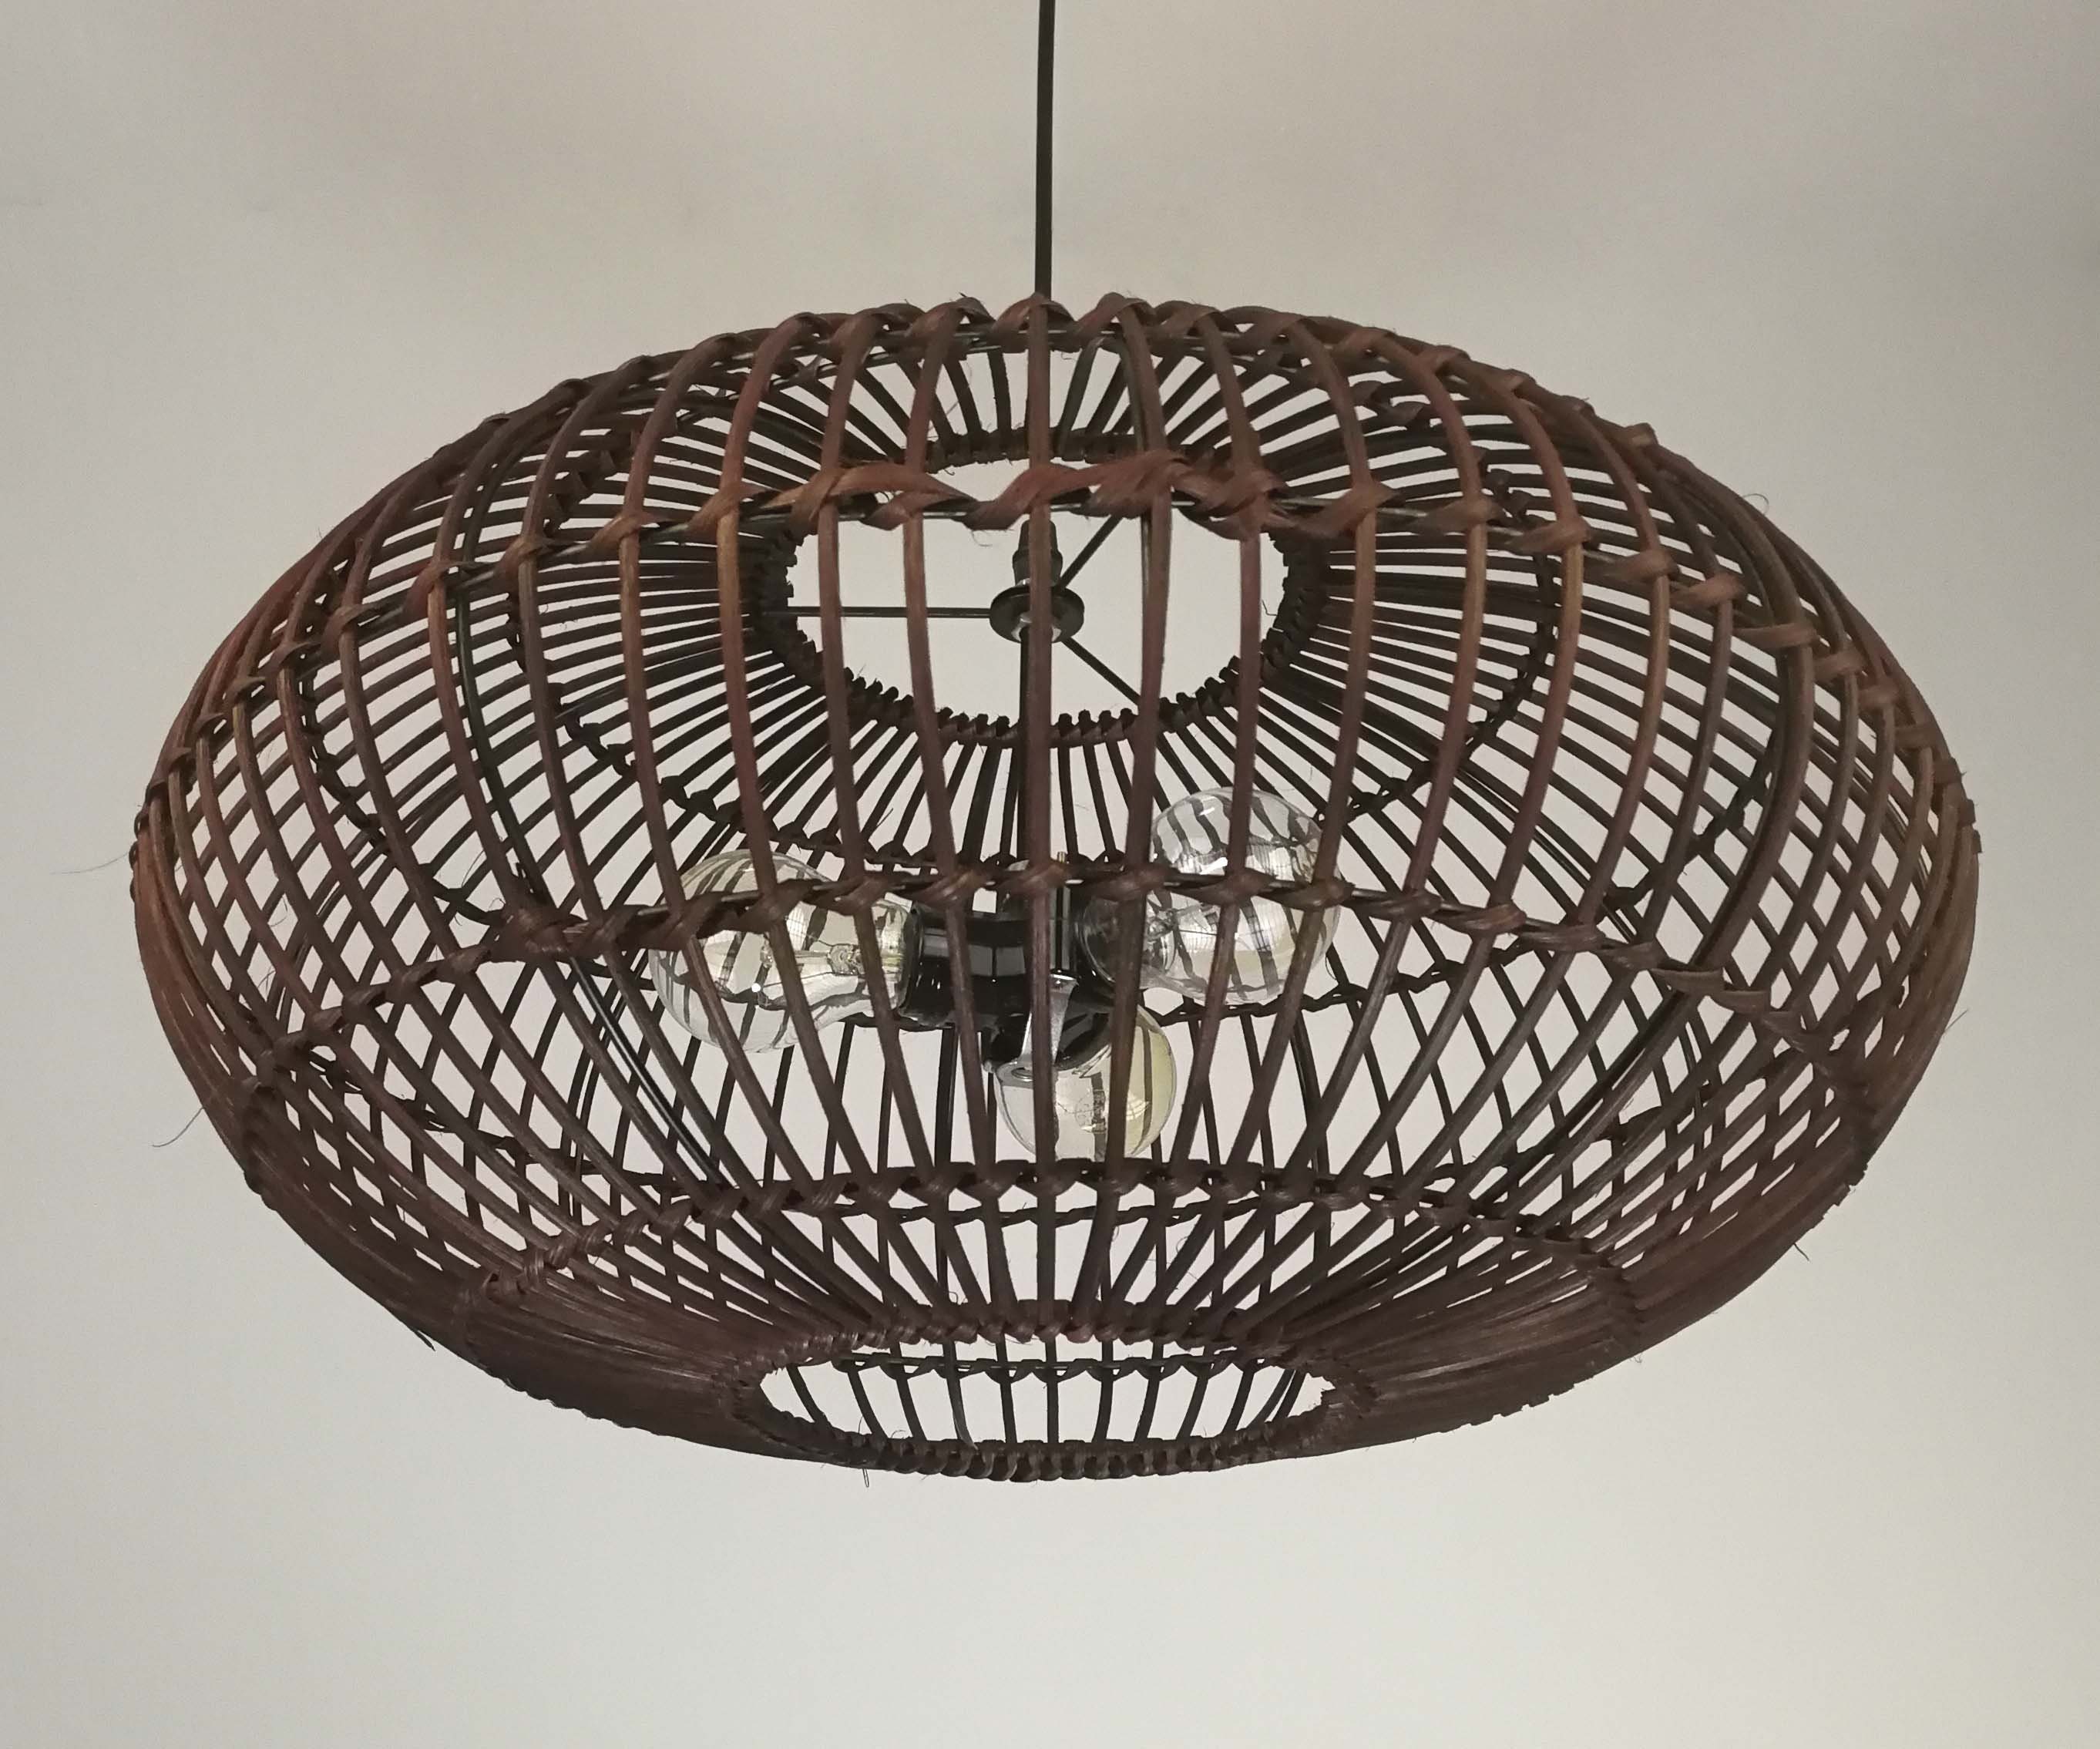 Rattan Basket Pendant Light with one Lampholder-110-240V50-60Hz Natural Rattan Color or Black Color